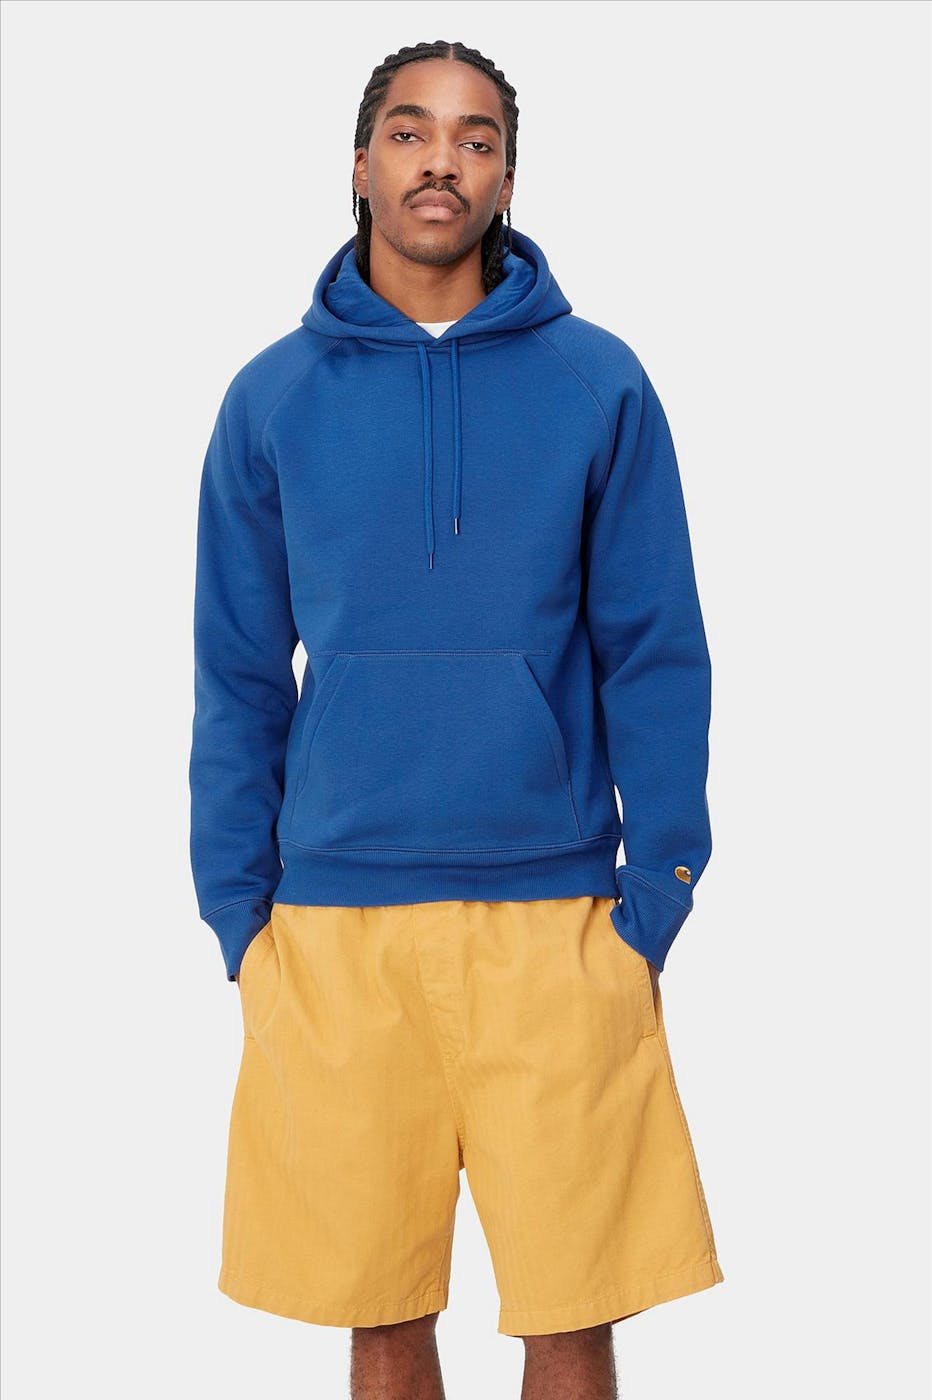 Carhartt WIP - Kobaltblauwe Chase hoodie